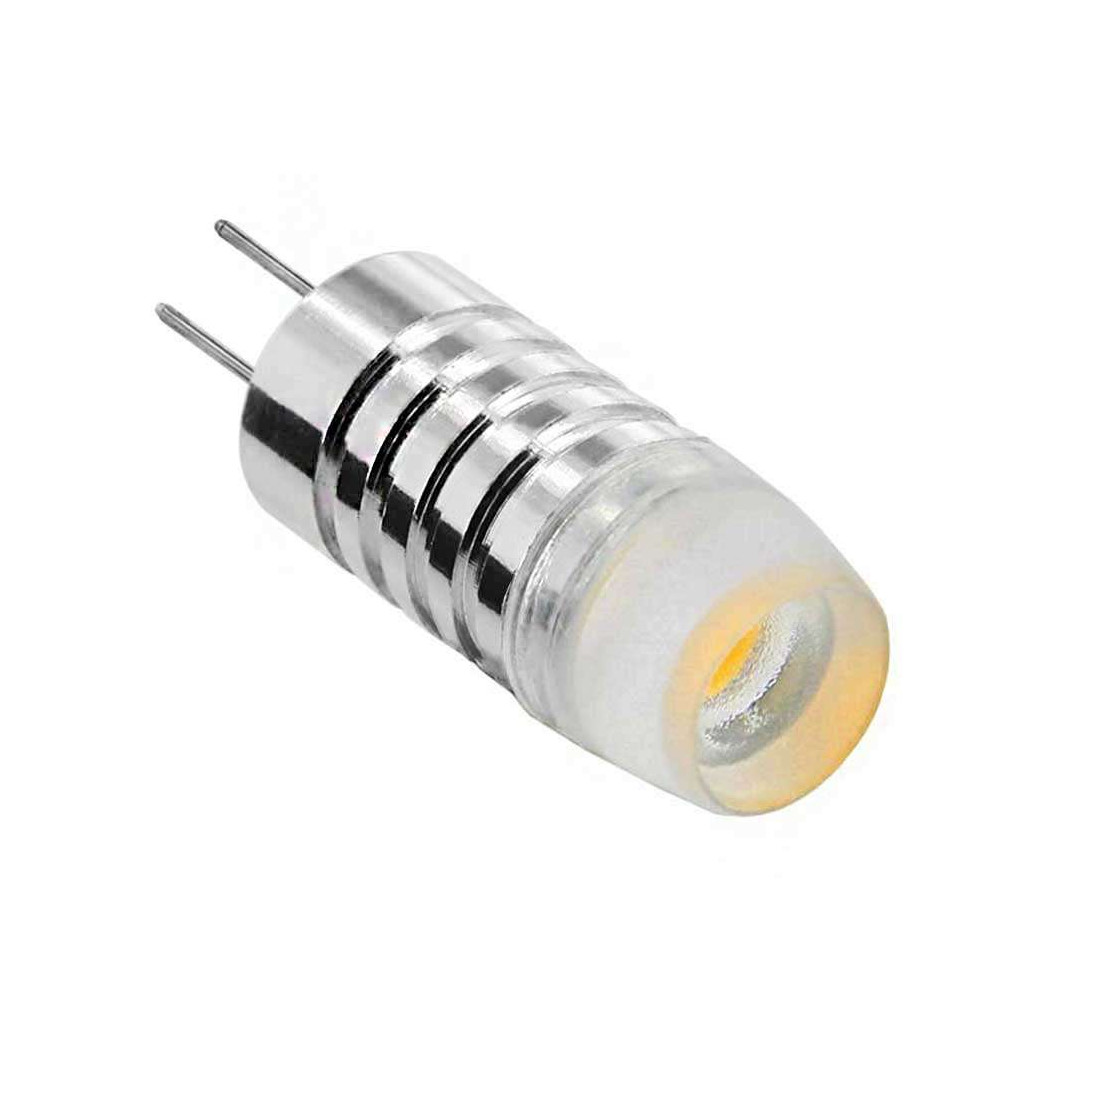 Réglette LED Ecodelie tension 110 volts de 12 watts longueur 60 centimètres